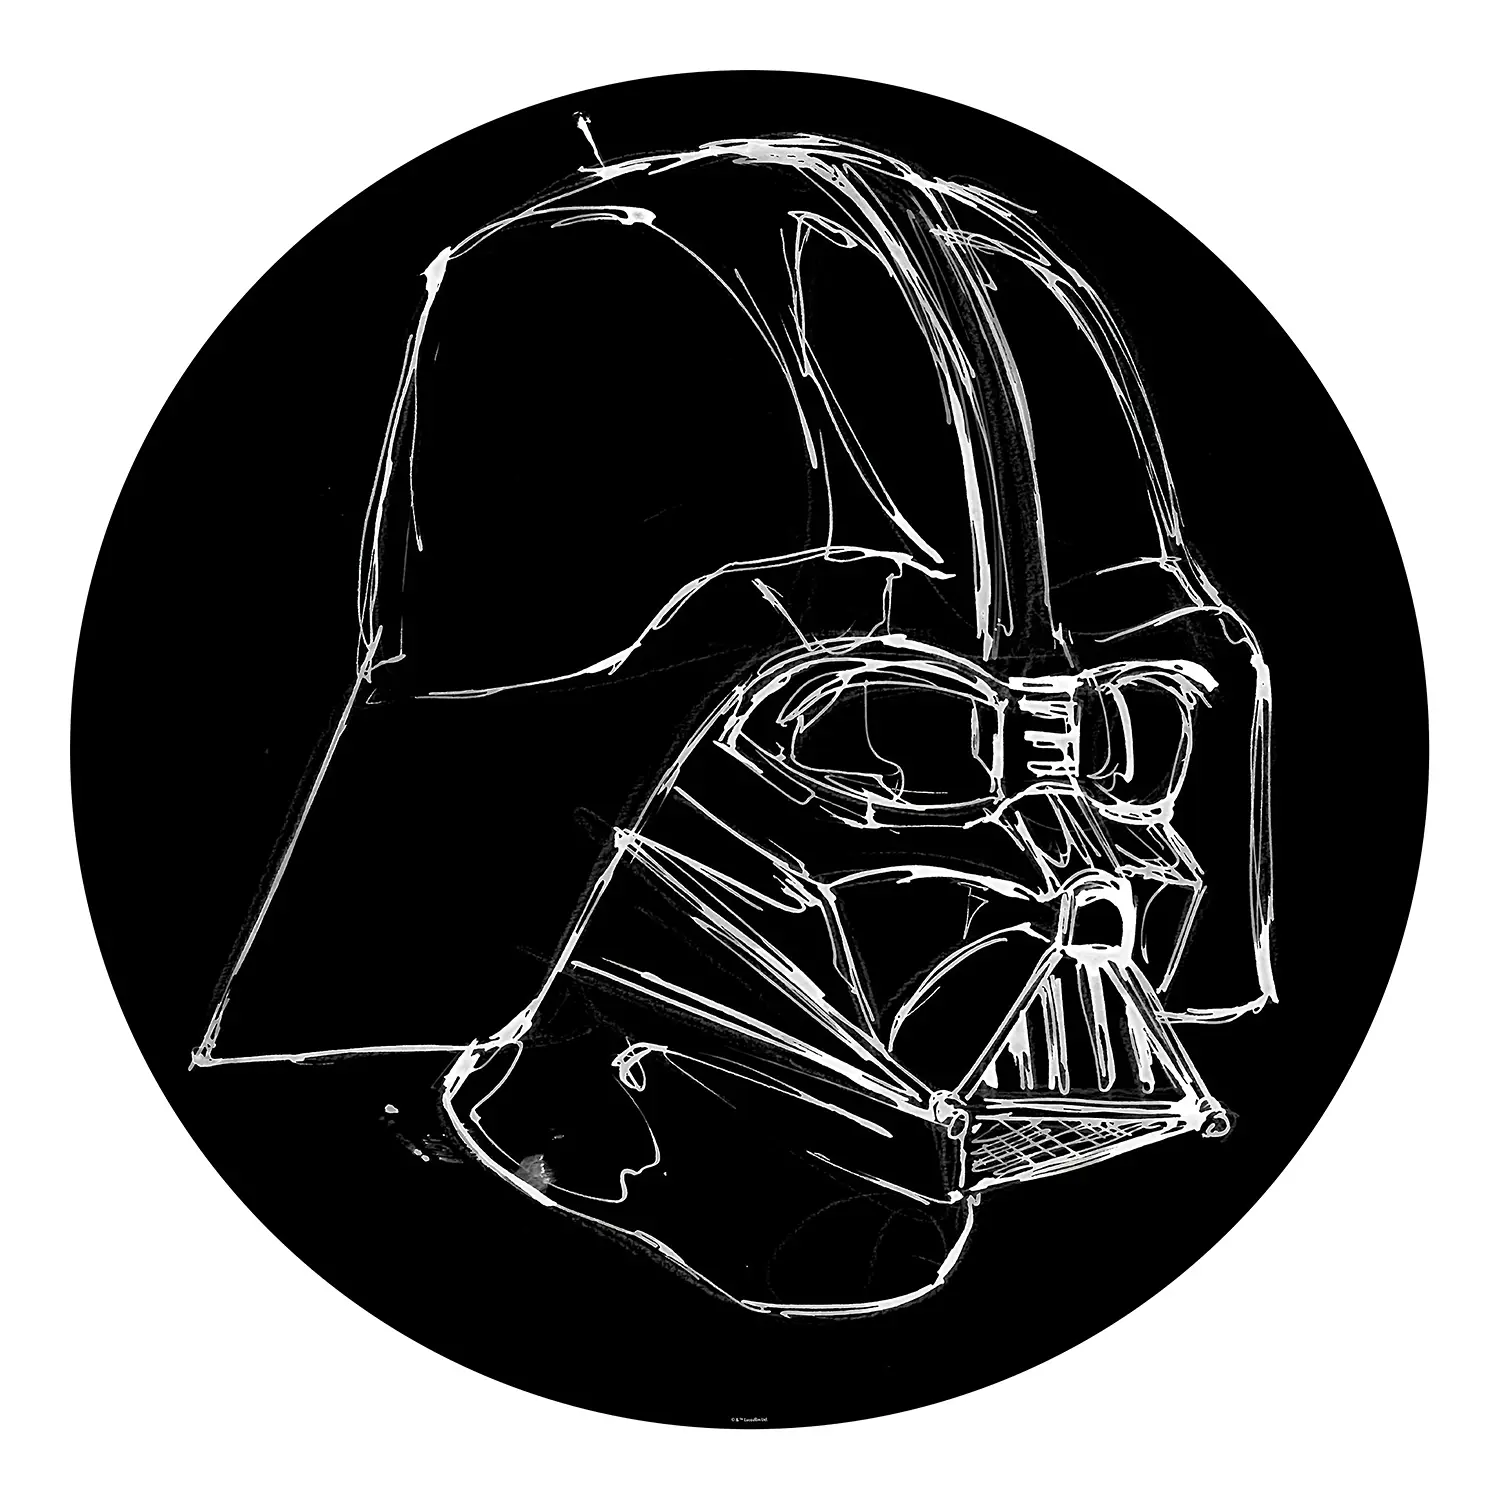 Vlies Fototapete Vader Wars Ink Star